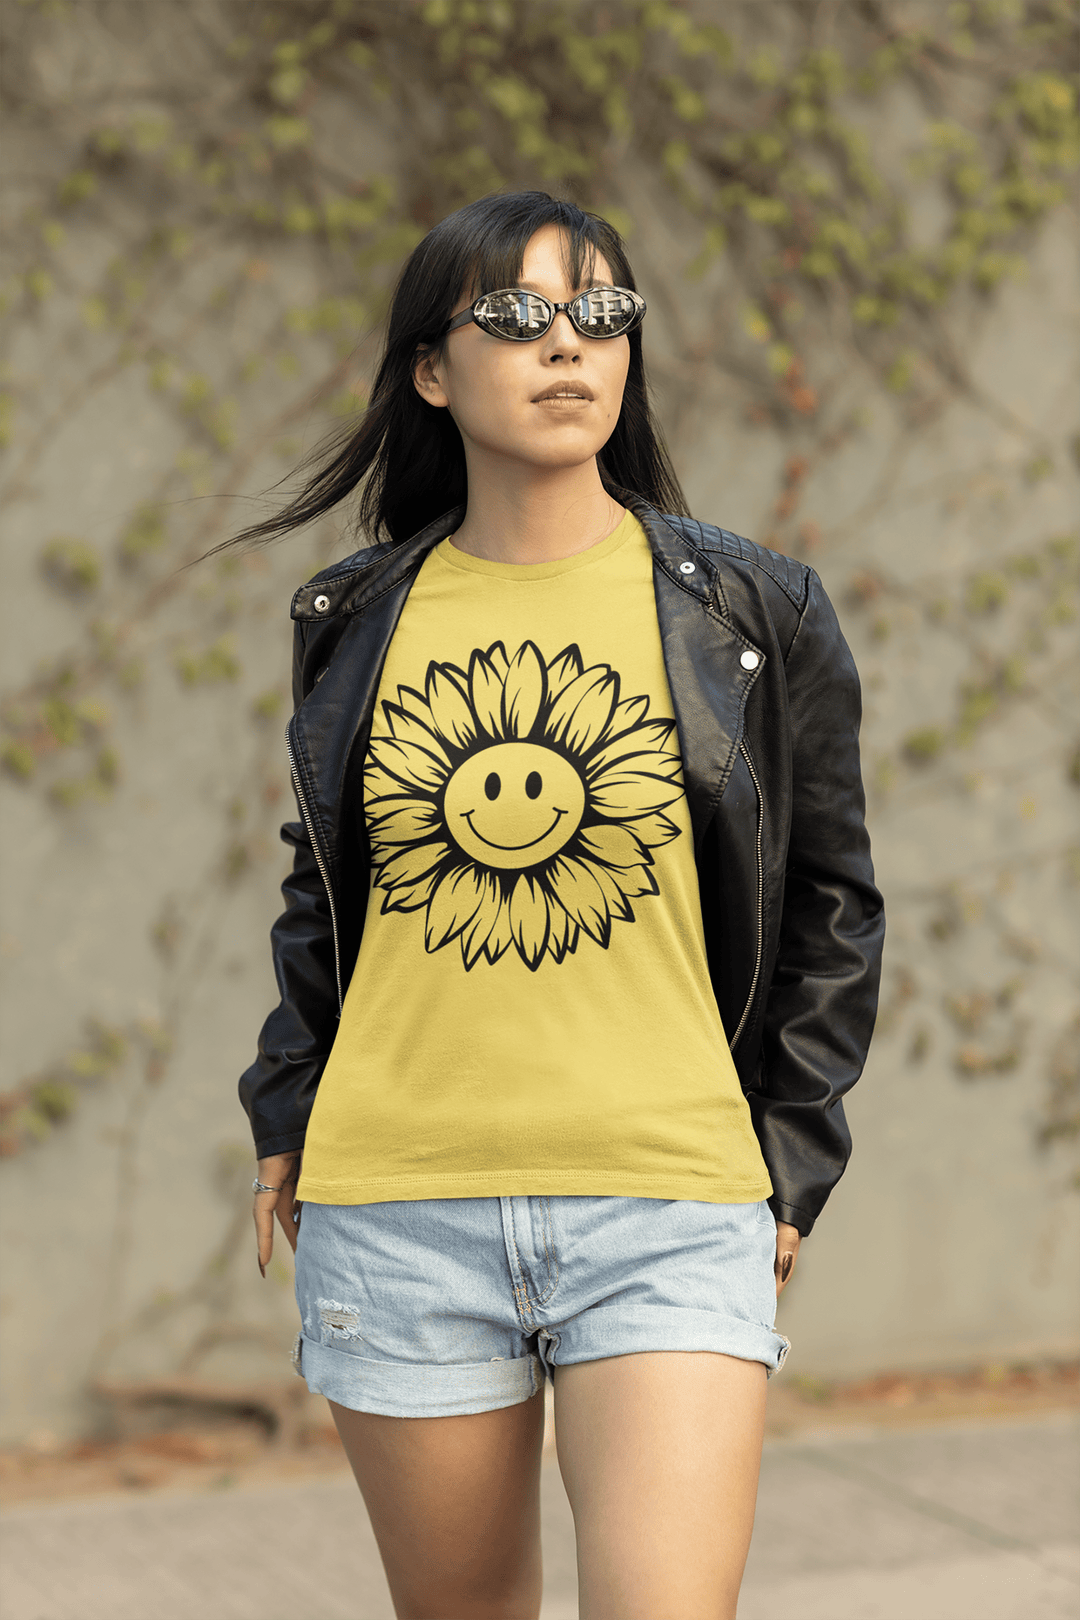 Sunflower Shirt Floral Tee Shirt